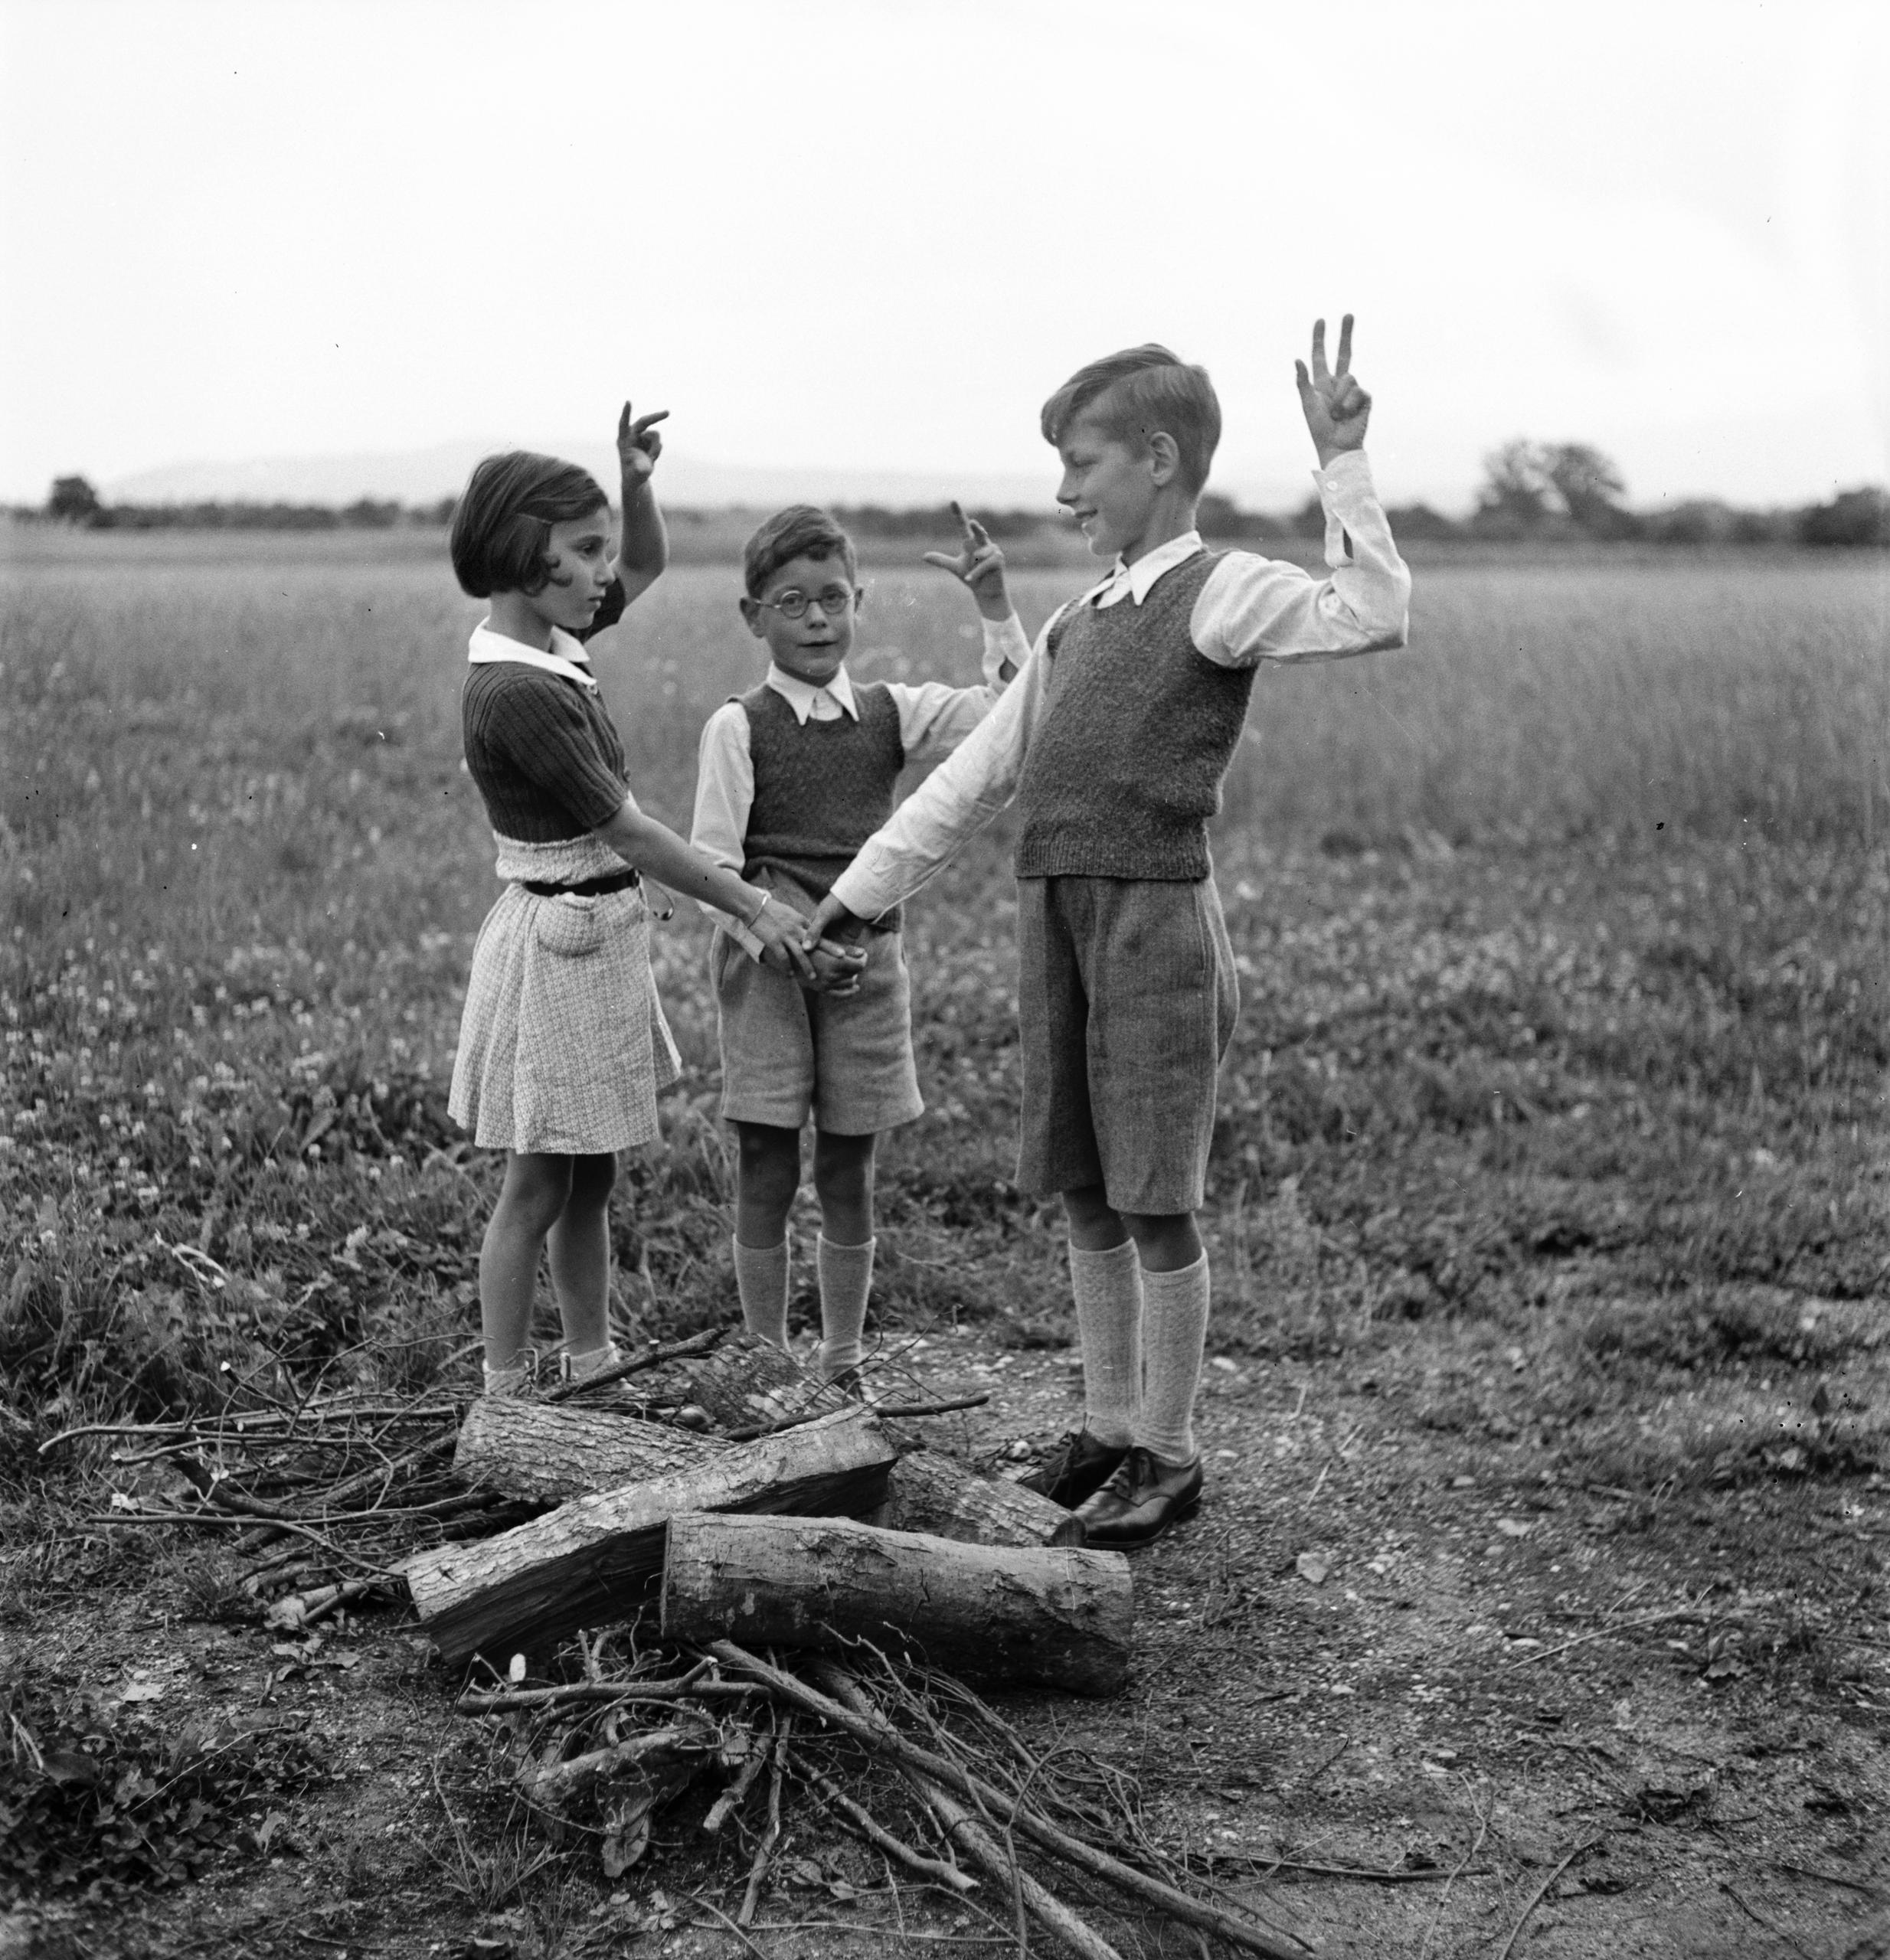 tre bambini fanno un giuramento davanti a dei ceppi pronti per il fuoco